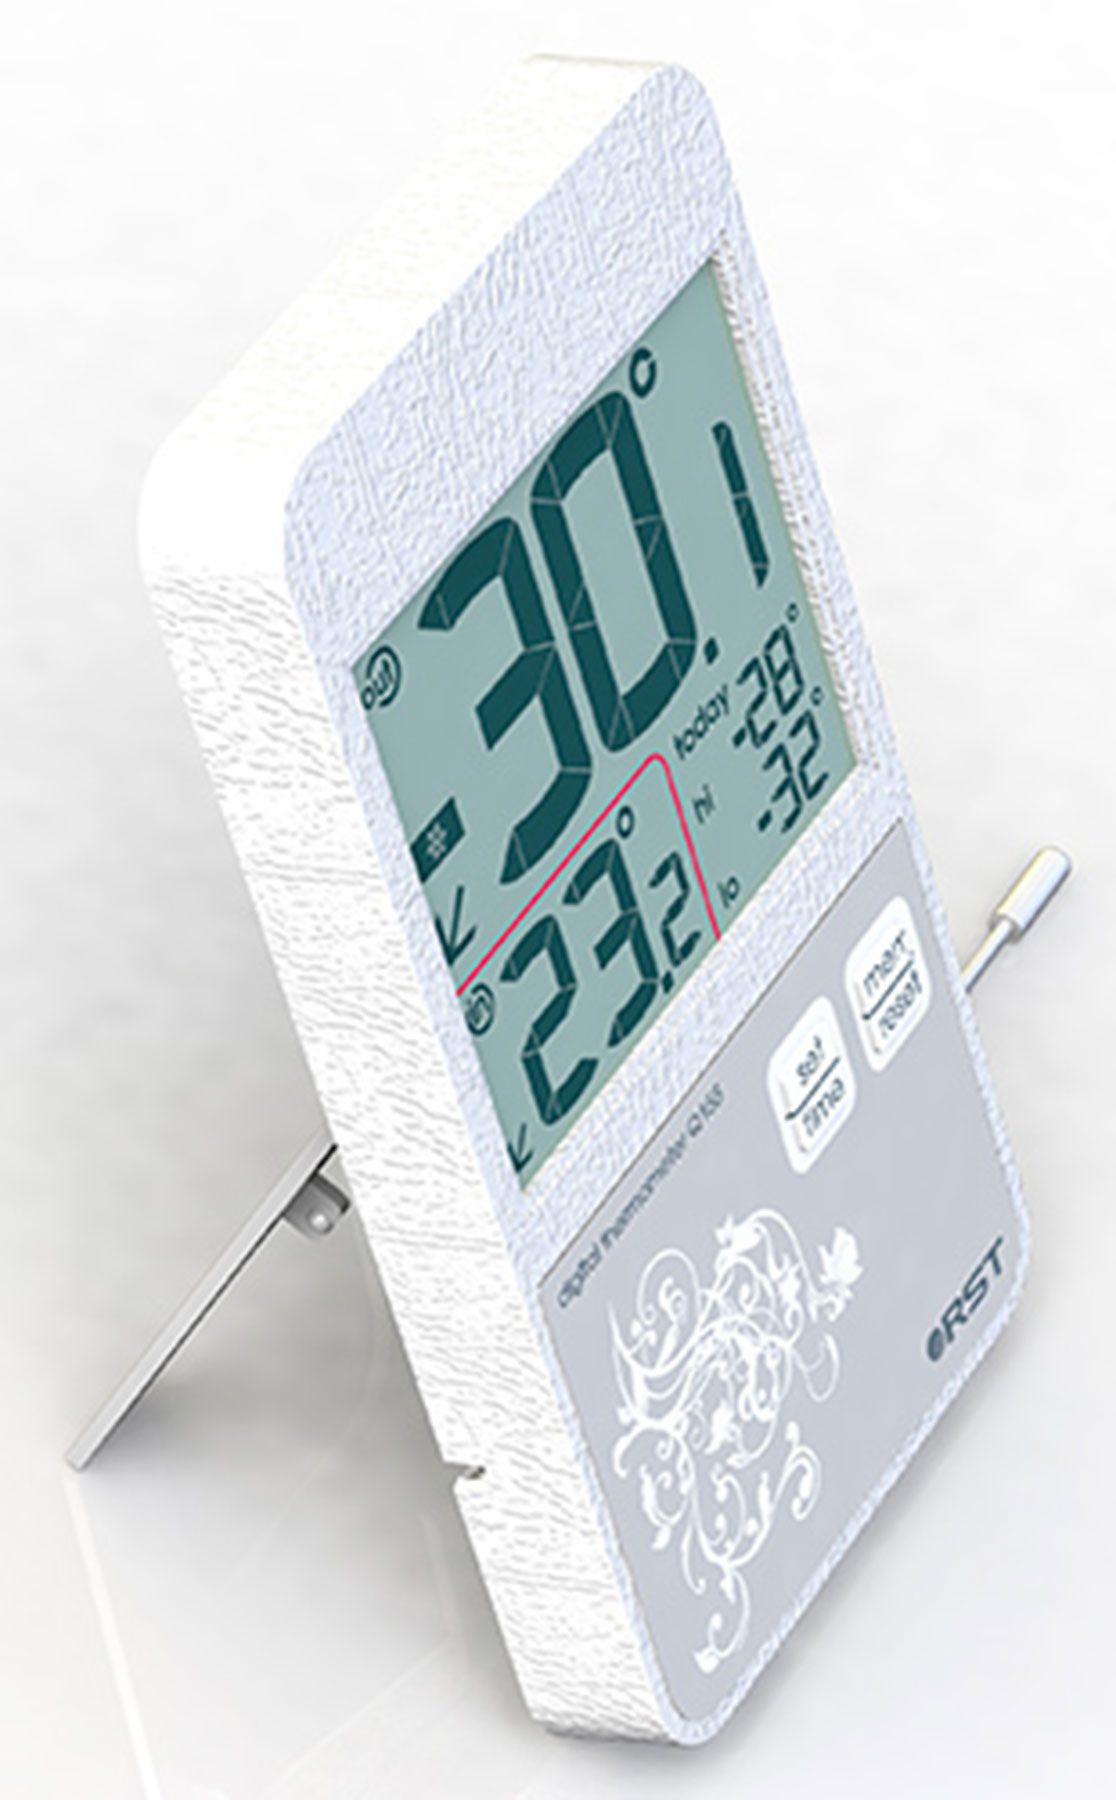 Купить термометр цифровой RST 02155 с внешним датчиком, оконный в .